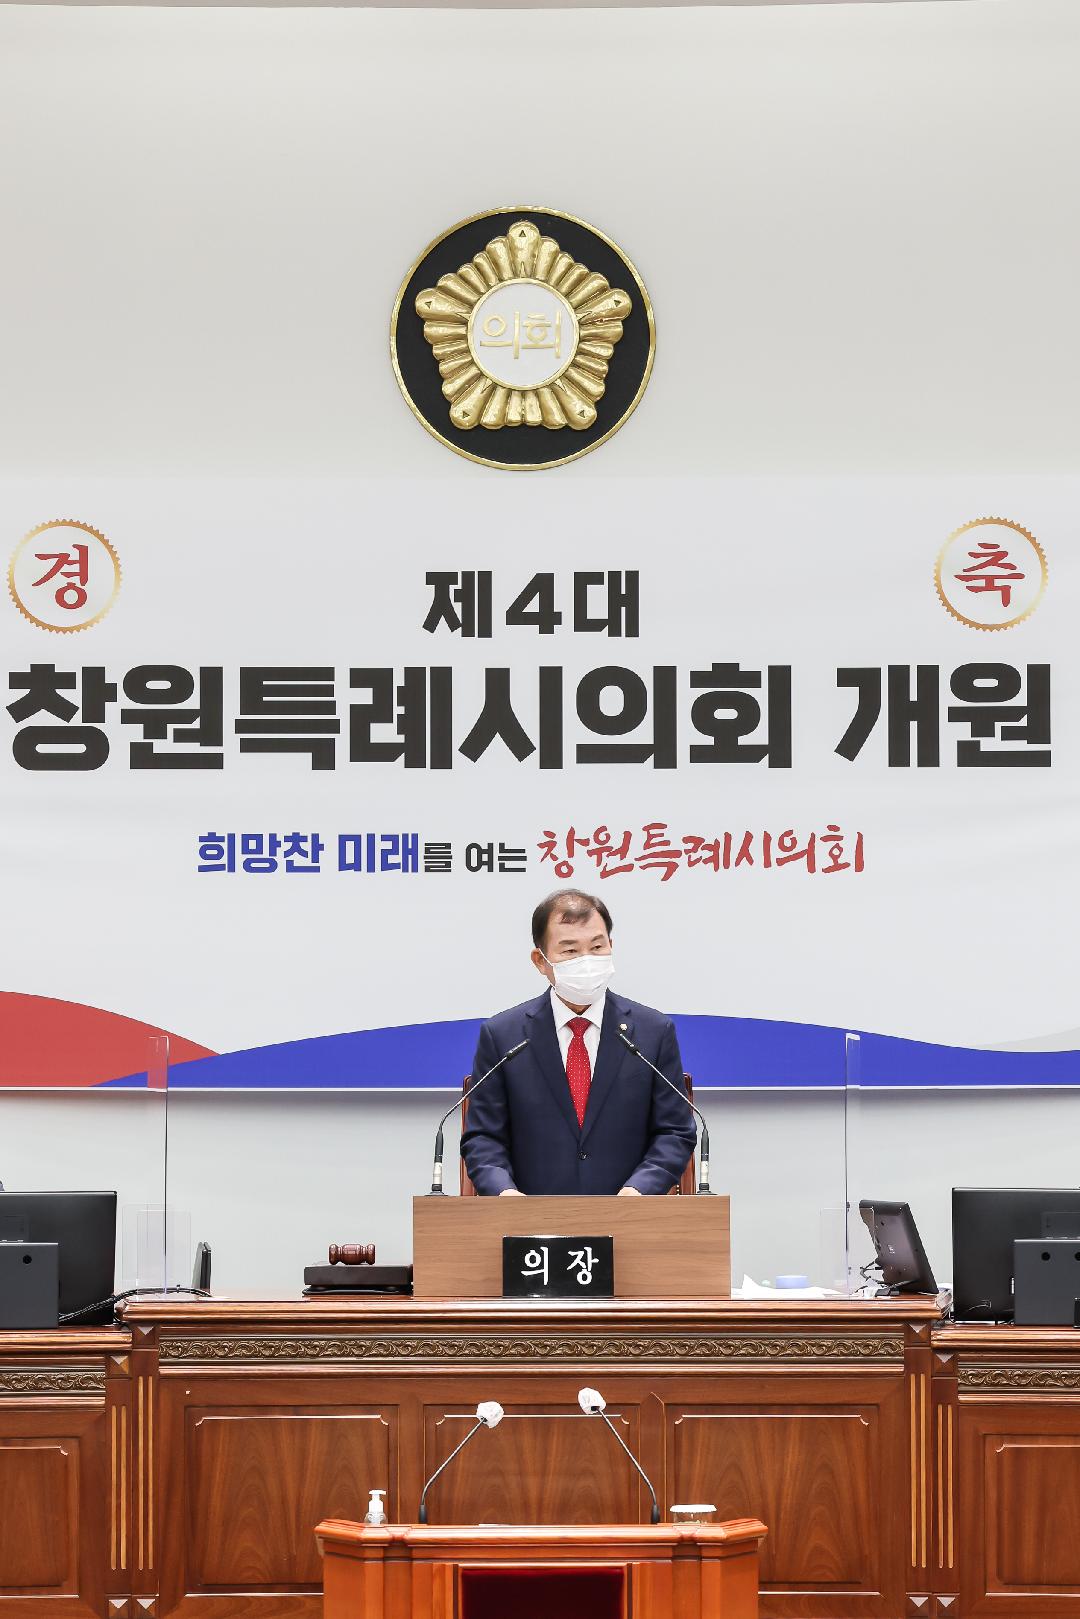 제4대 창원특례시의회 출범, 전반기 의장에 김이근 의원 선출2